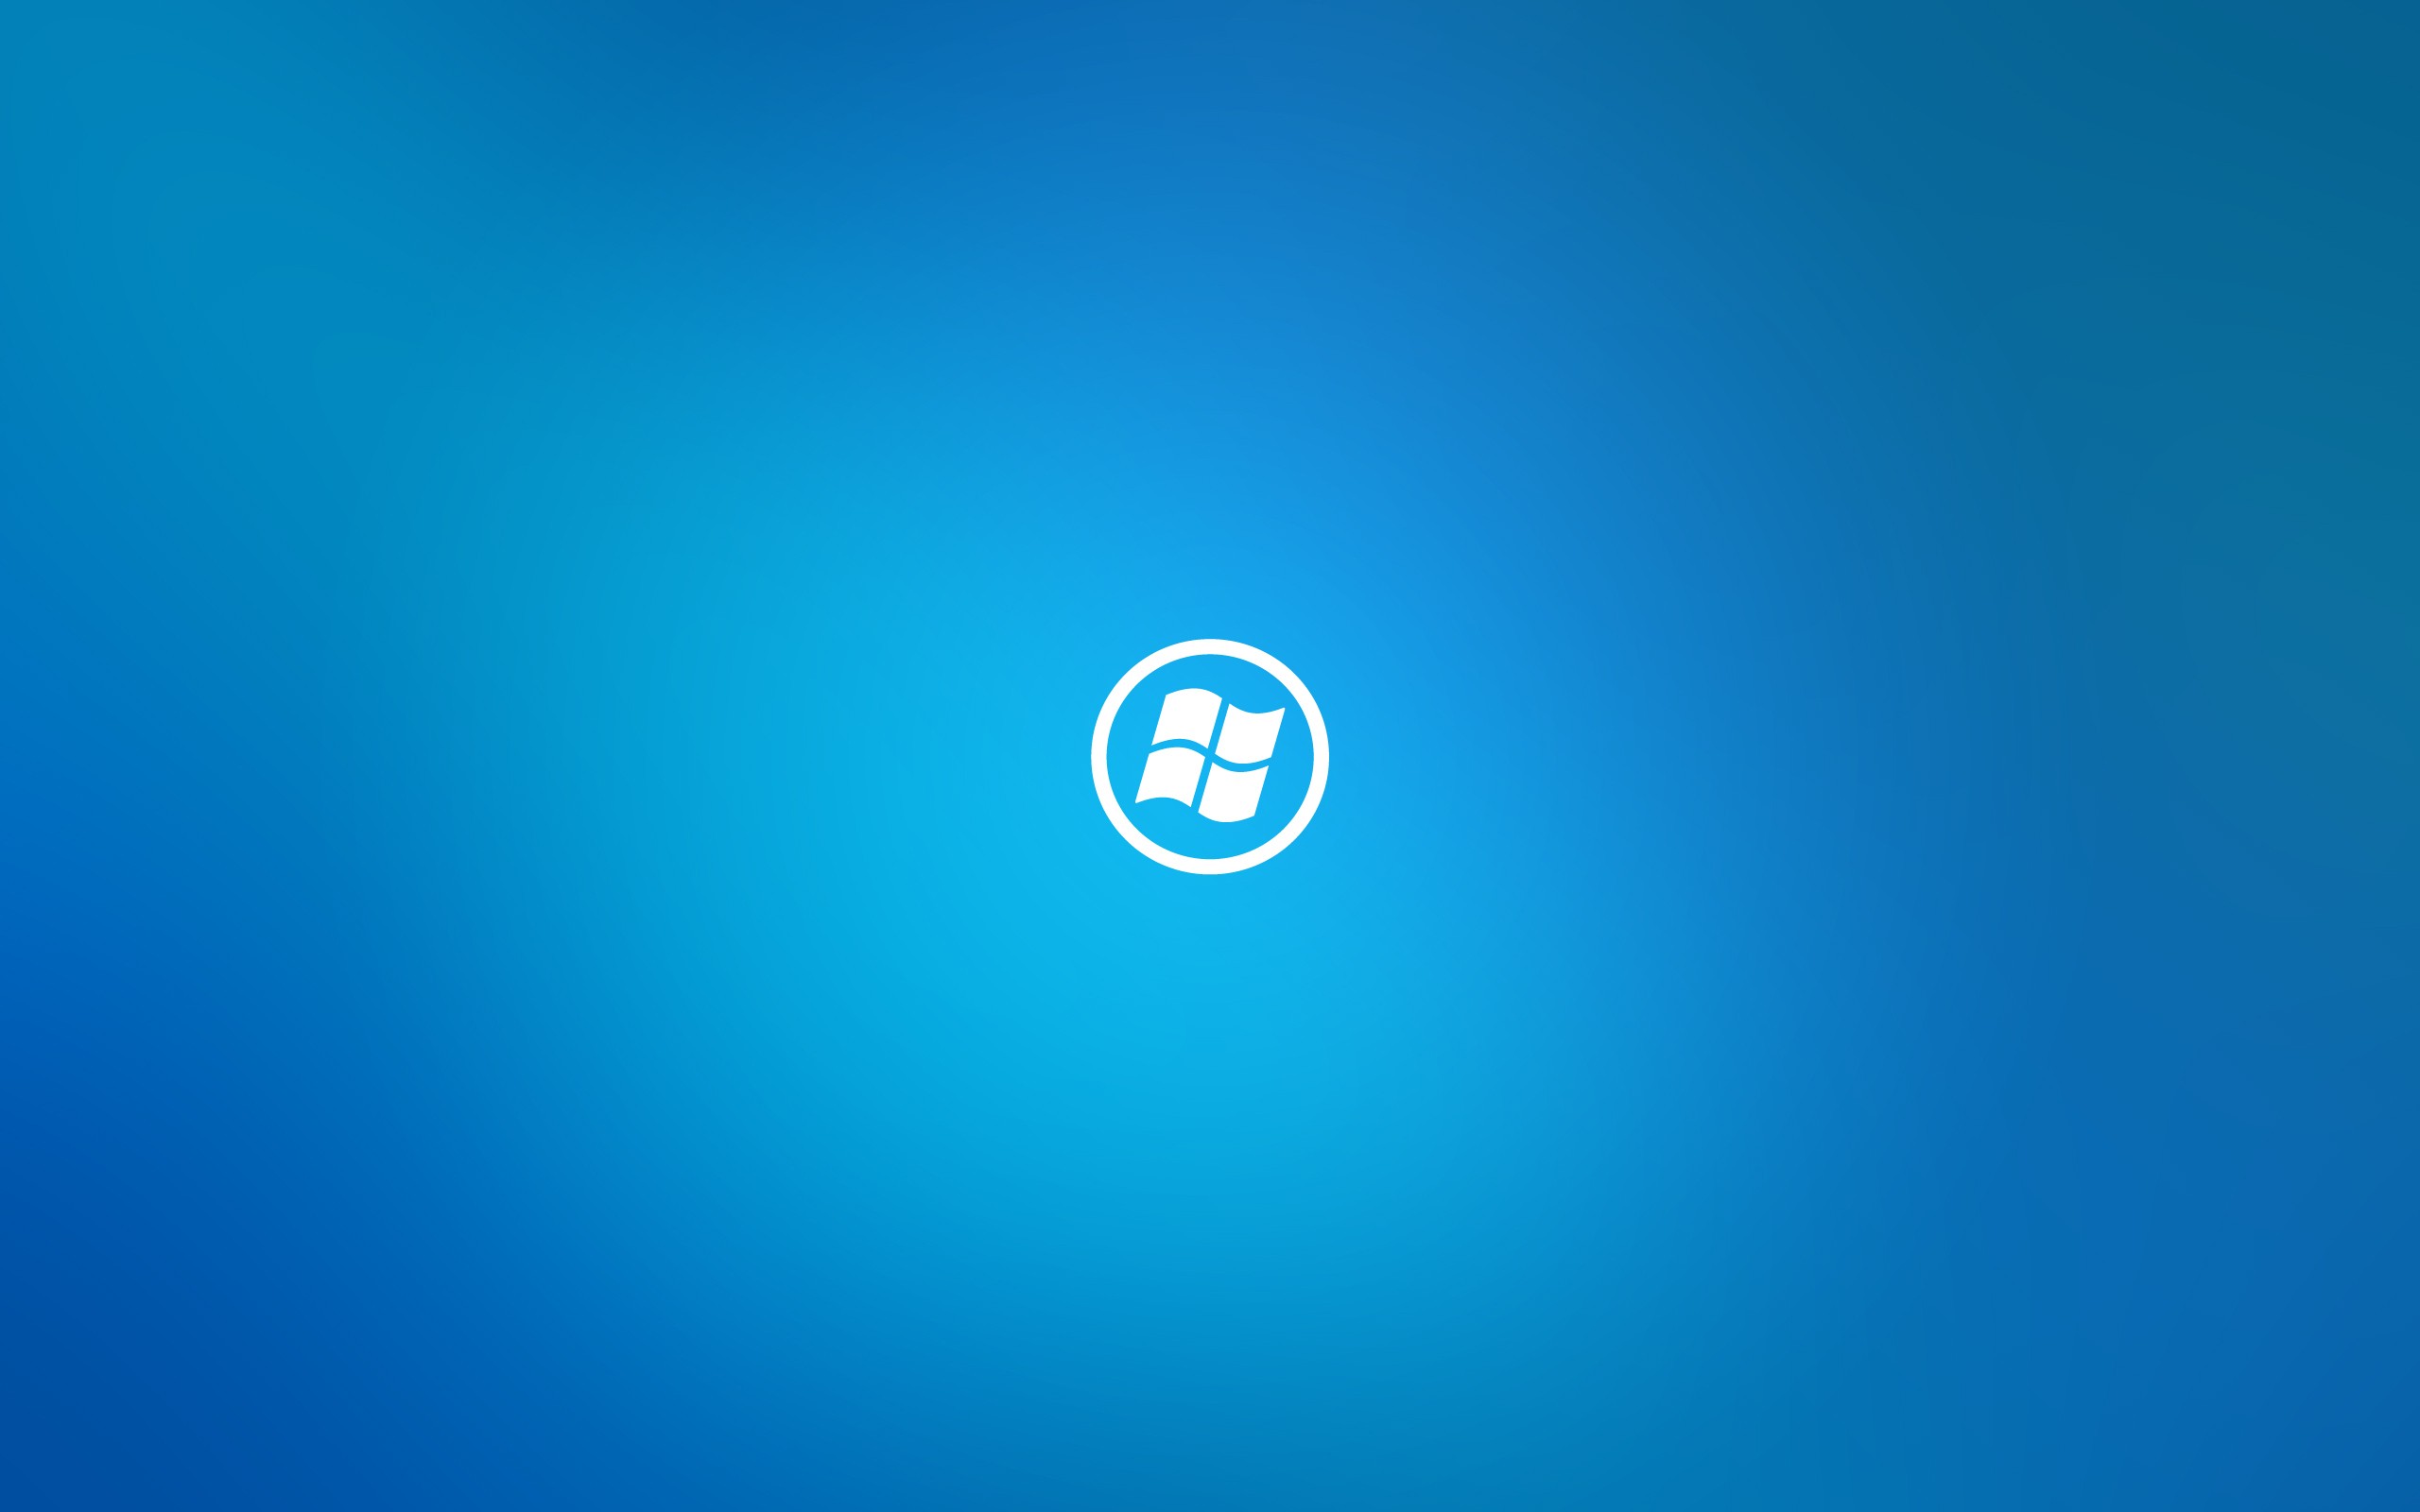 Blue Simple Windows 8 HD Desktop wallpaper | brands and logos | Wallpaper  Better